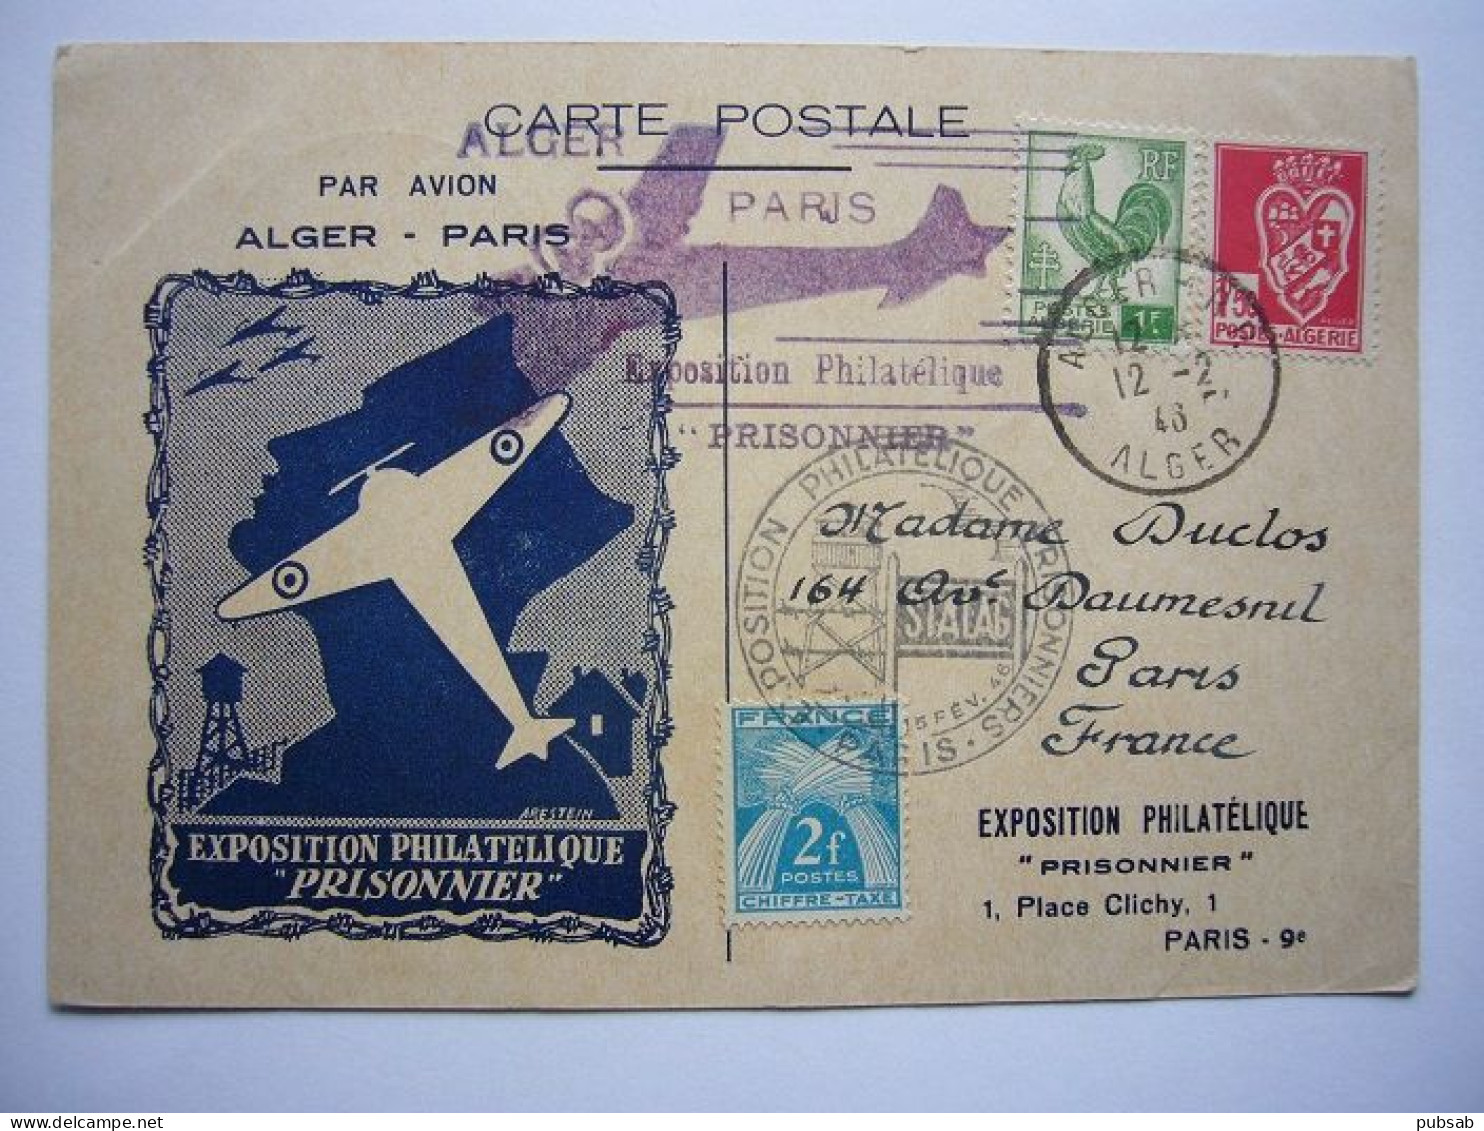 Avion / Airplane / Exposition Philatélique PRISONNIER / Par Avion Alger - Paris / 12.02.43. - 1939-1945: 2a Guerra